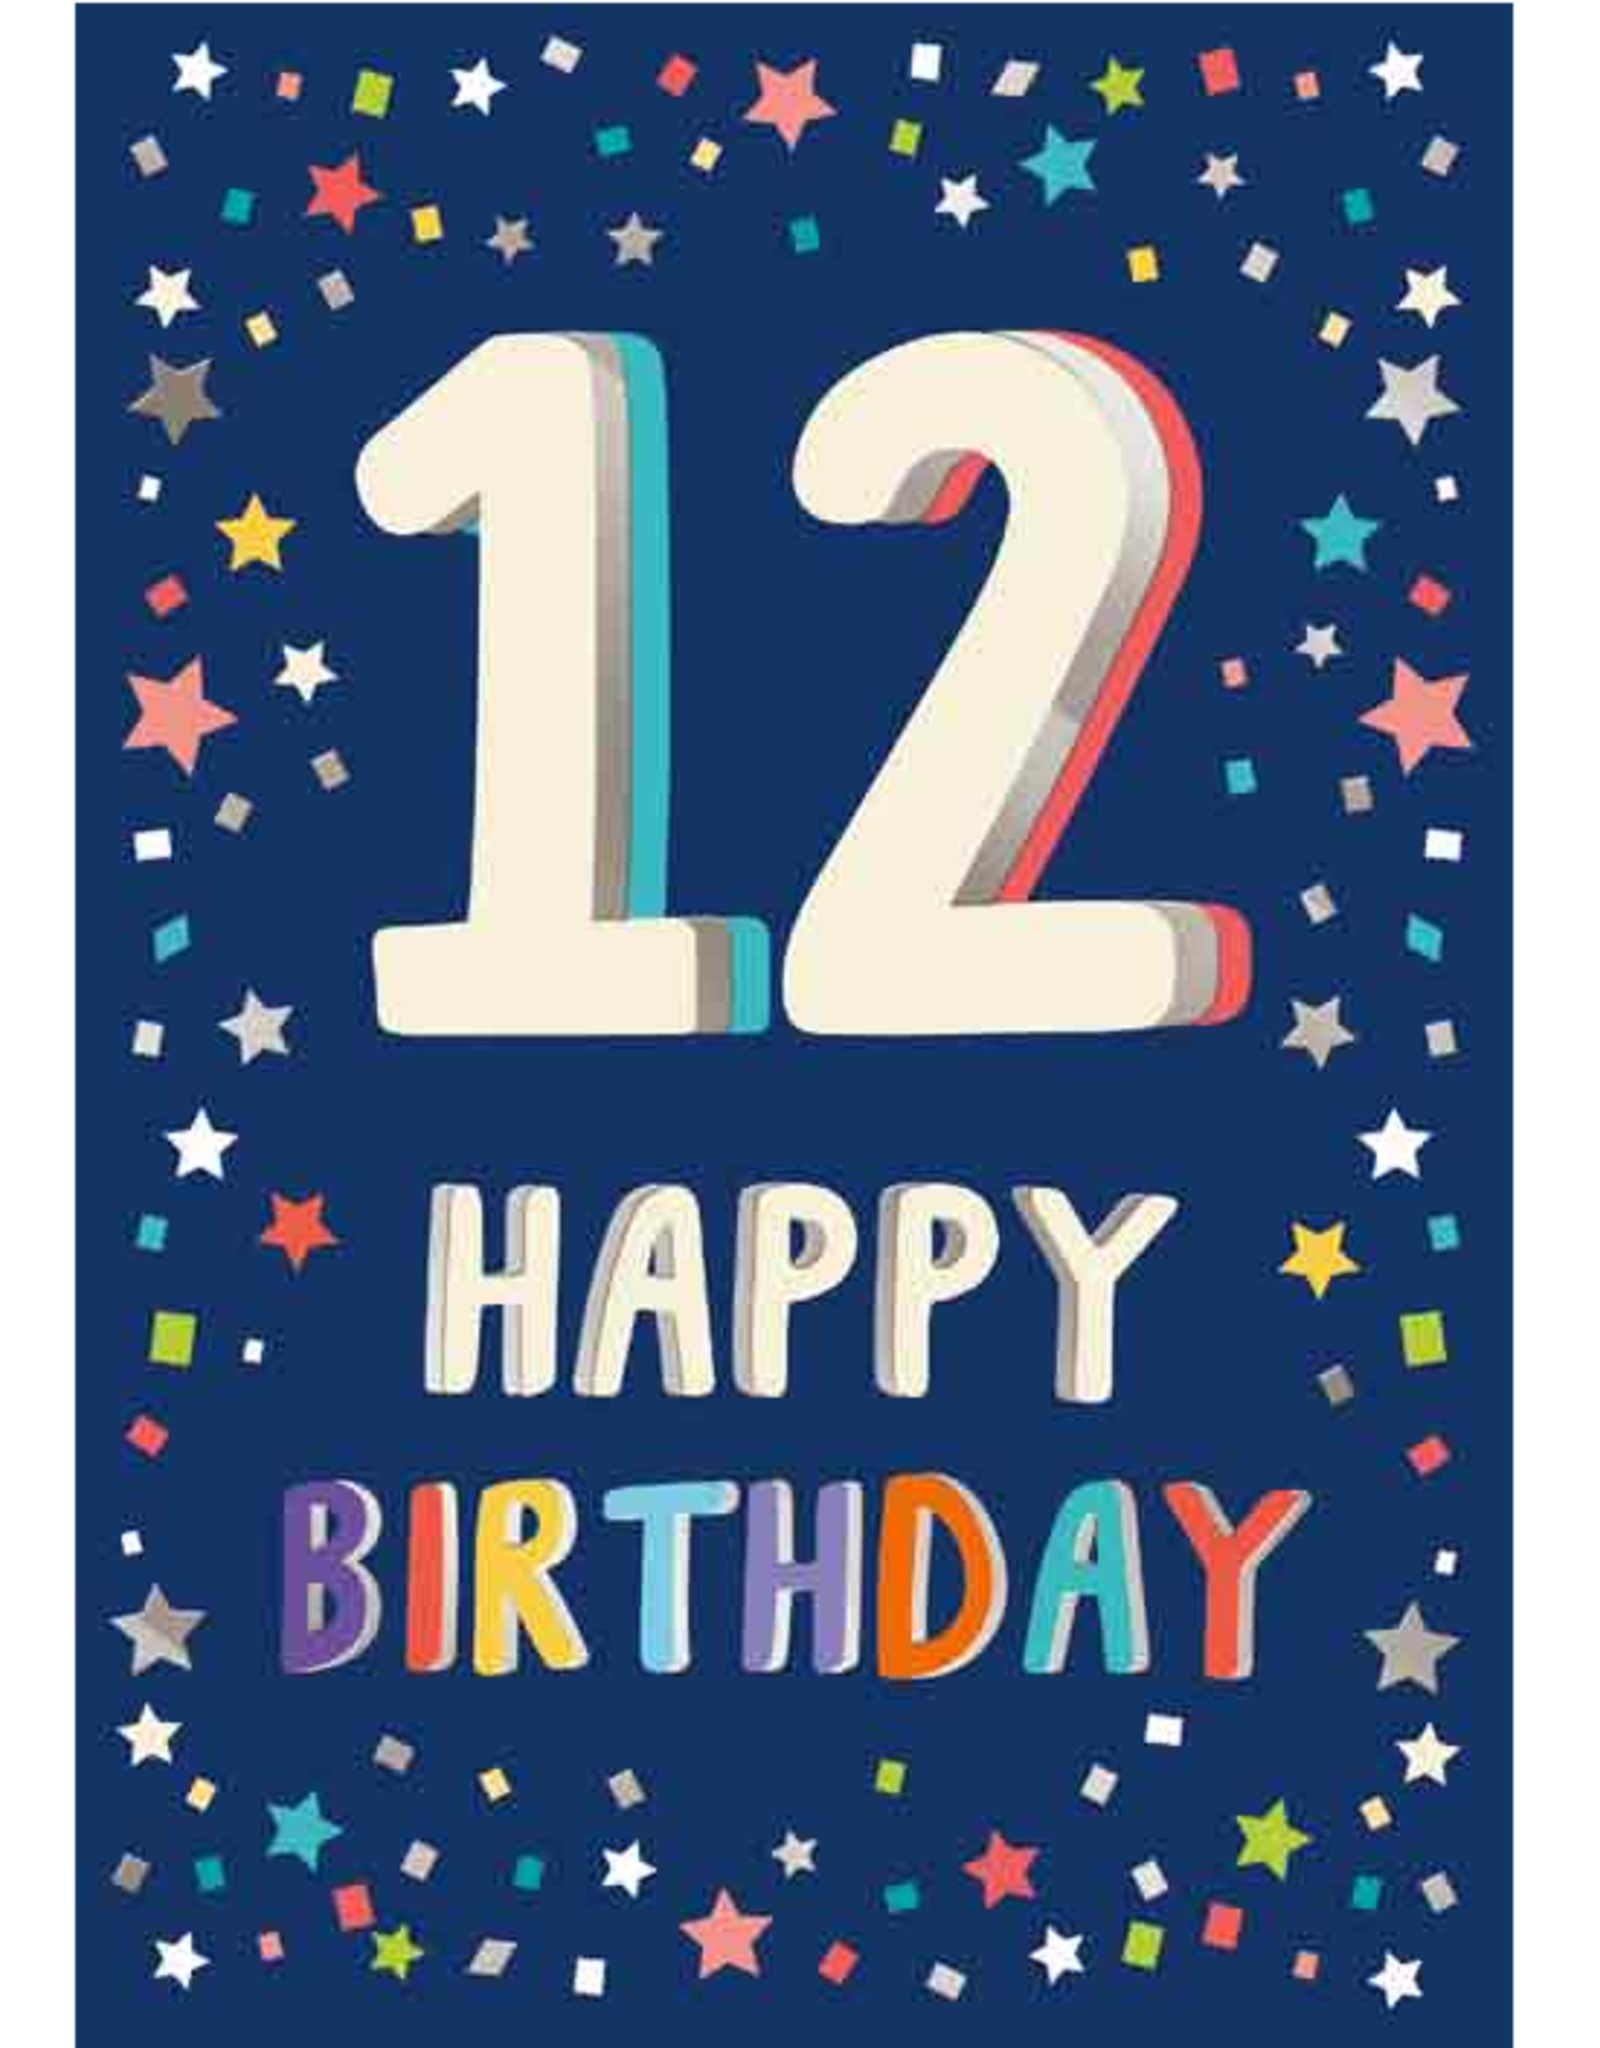 12 Happy Birthday - Wenskaart Celebrate